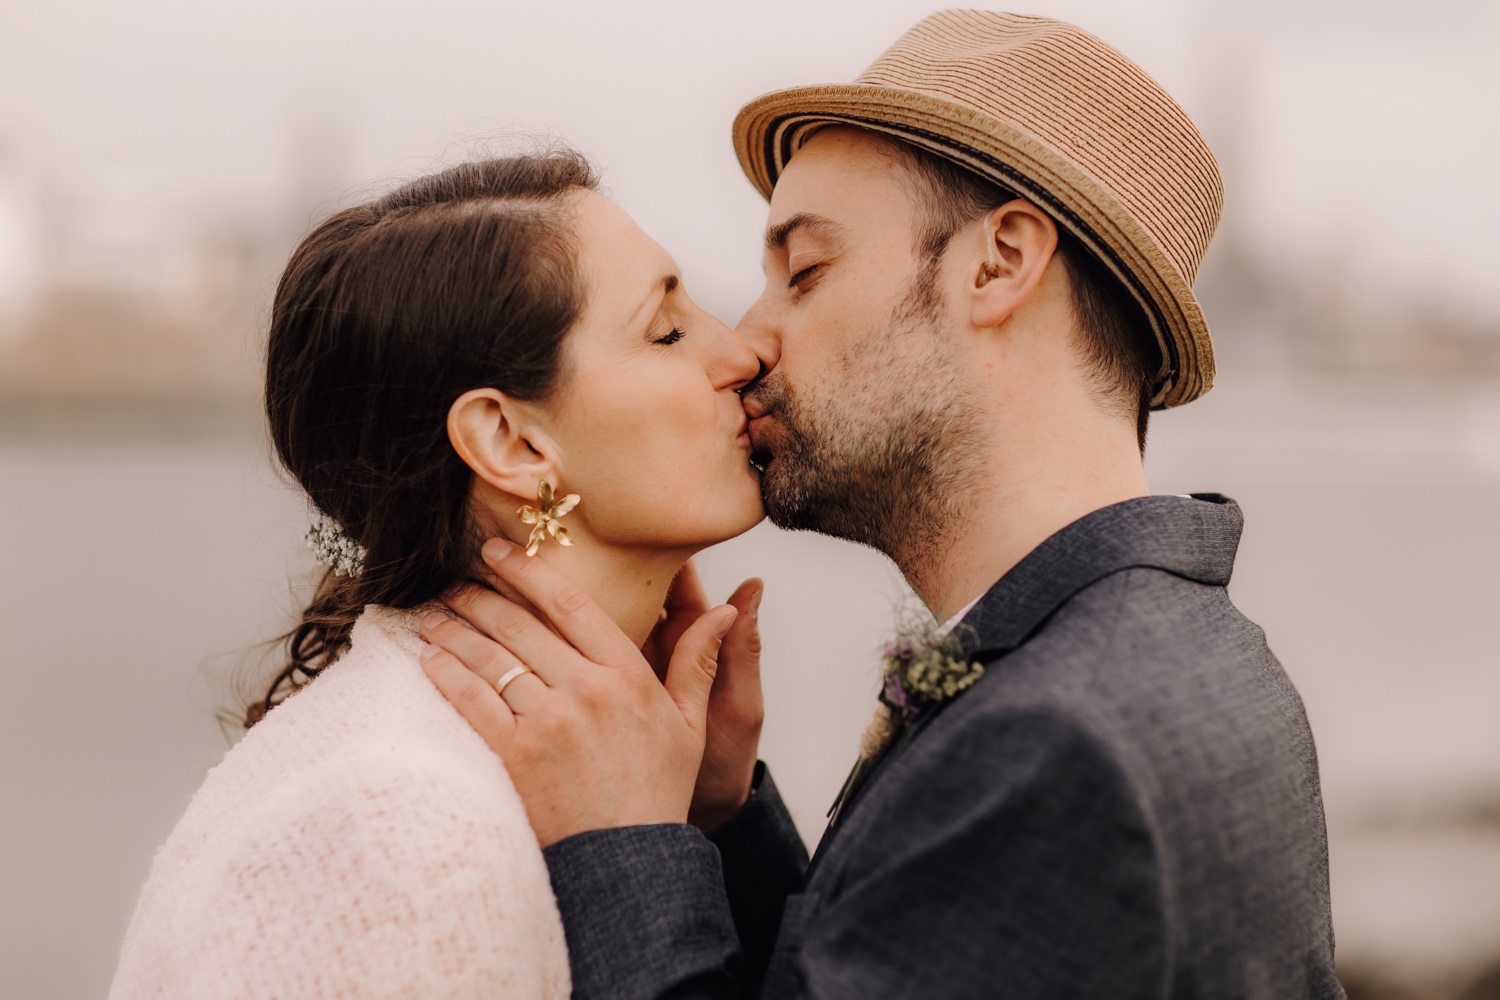 Huwelijksfotograaf Limburg - bruidspaar kust elkaar innig tijdens fotoshoot